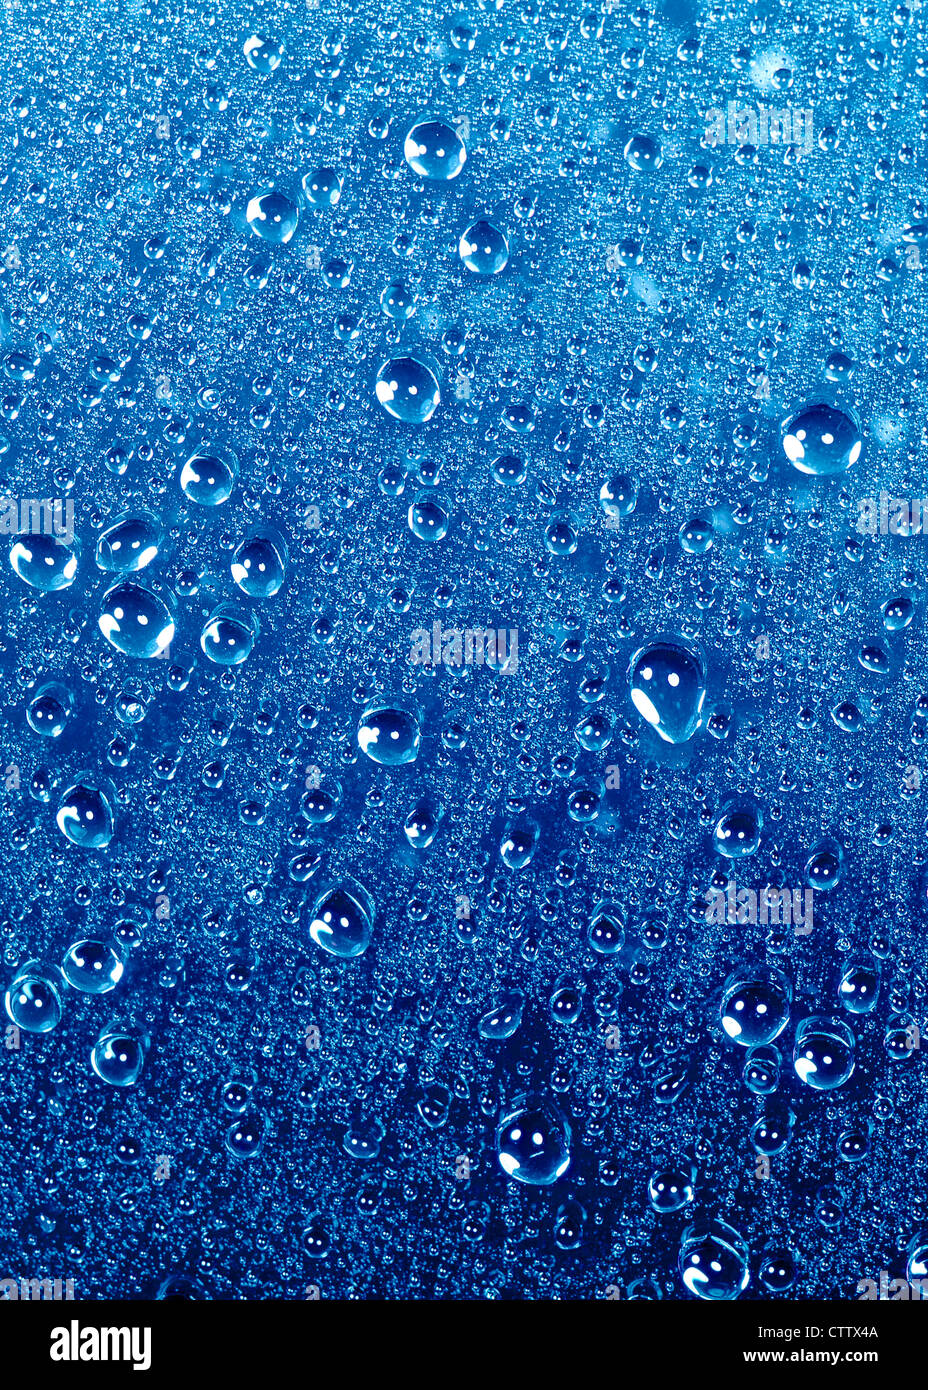 Water drops on a coated surface - Perlende Wassertropfen auf beschichteter schwarzer Platte Stock Photo